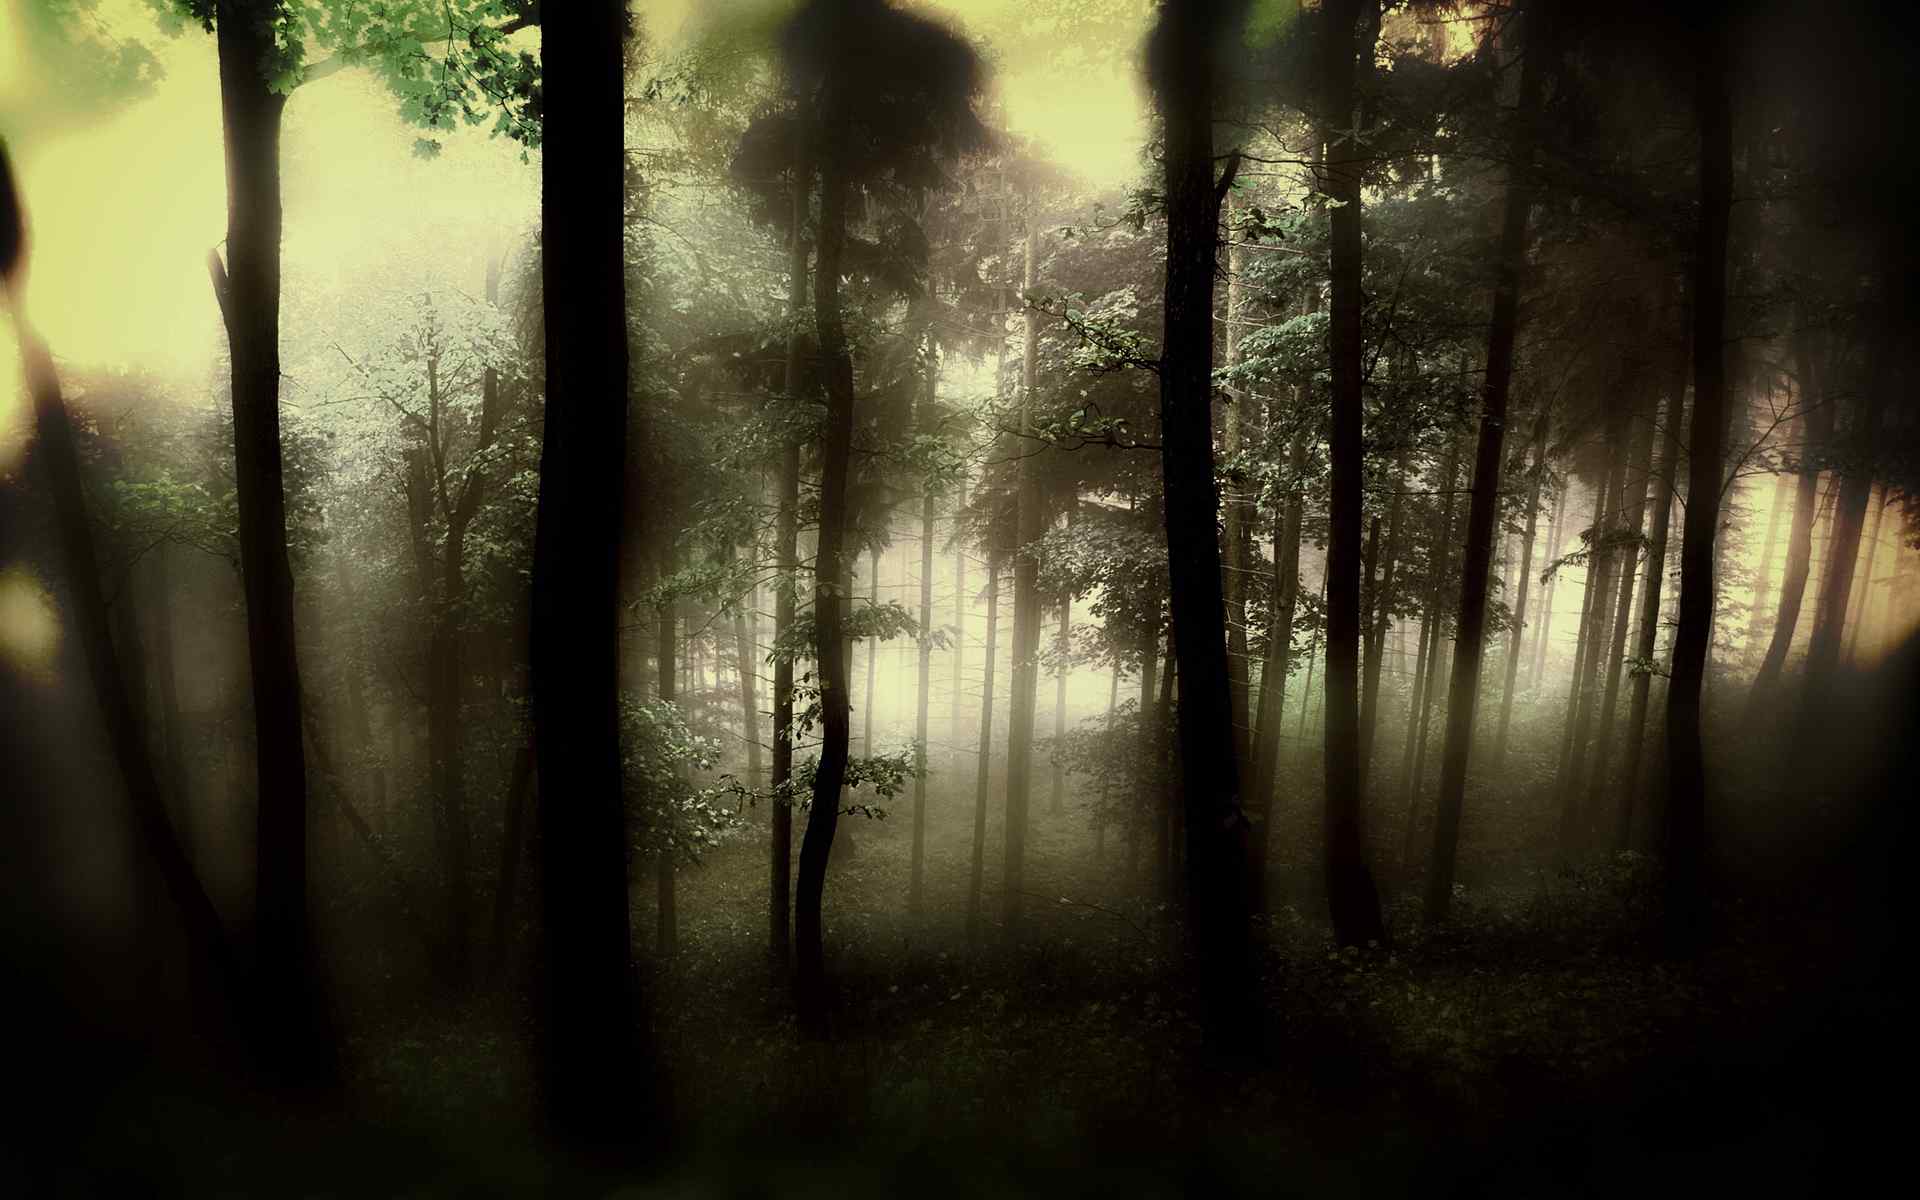 神秘森林风景壁纸